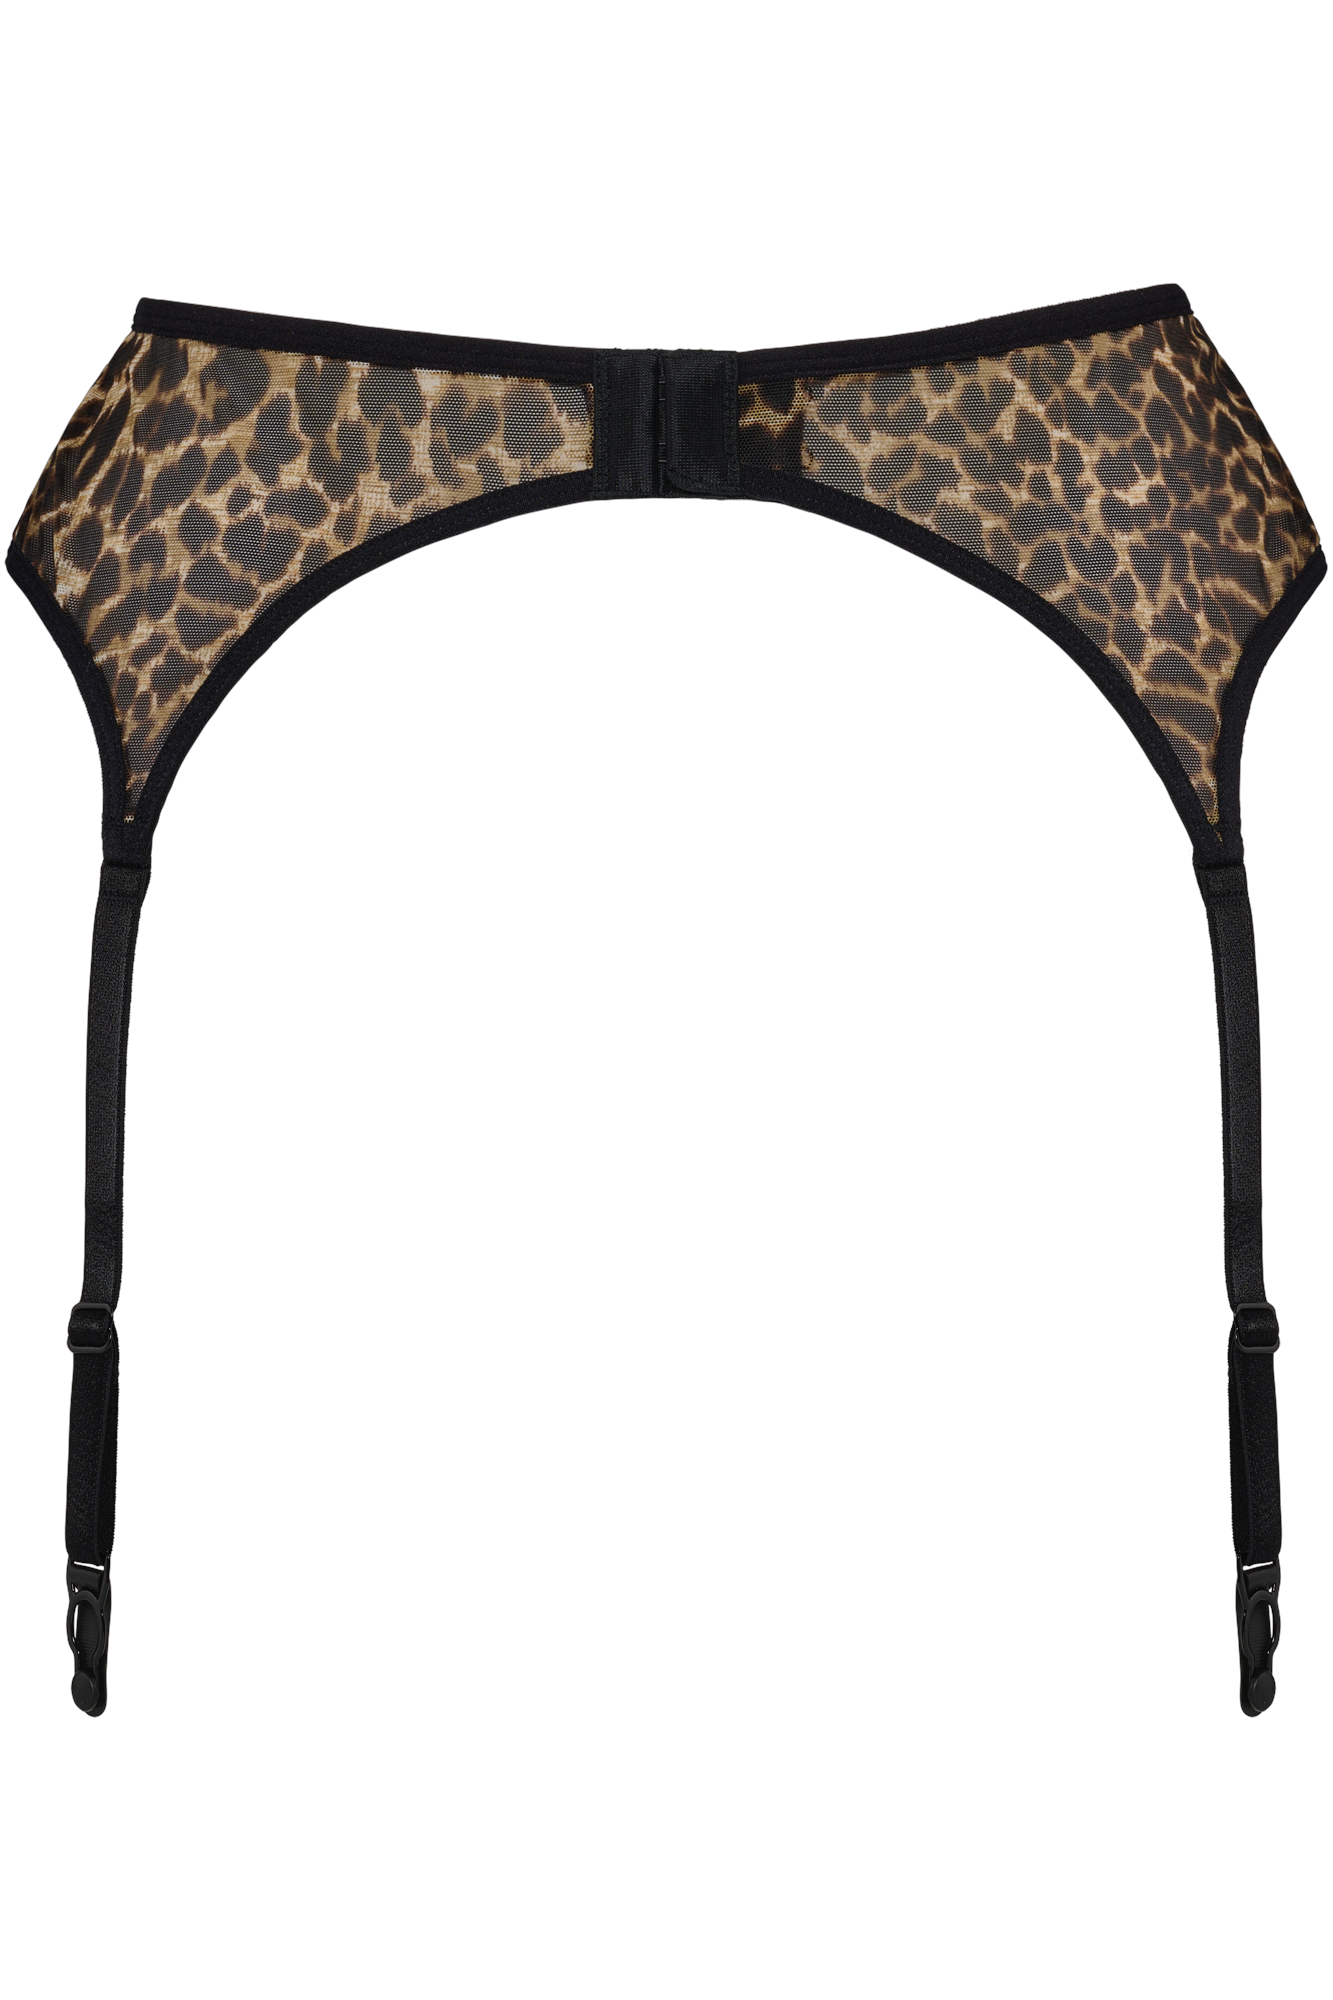 Marlies Dekkers vixen jarretel leopard print